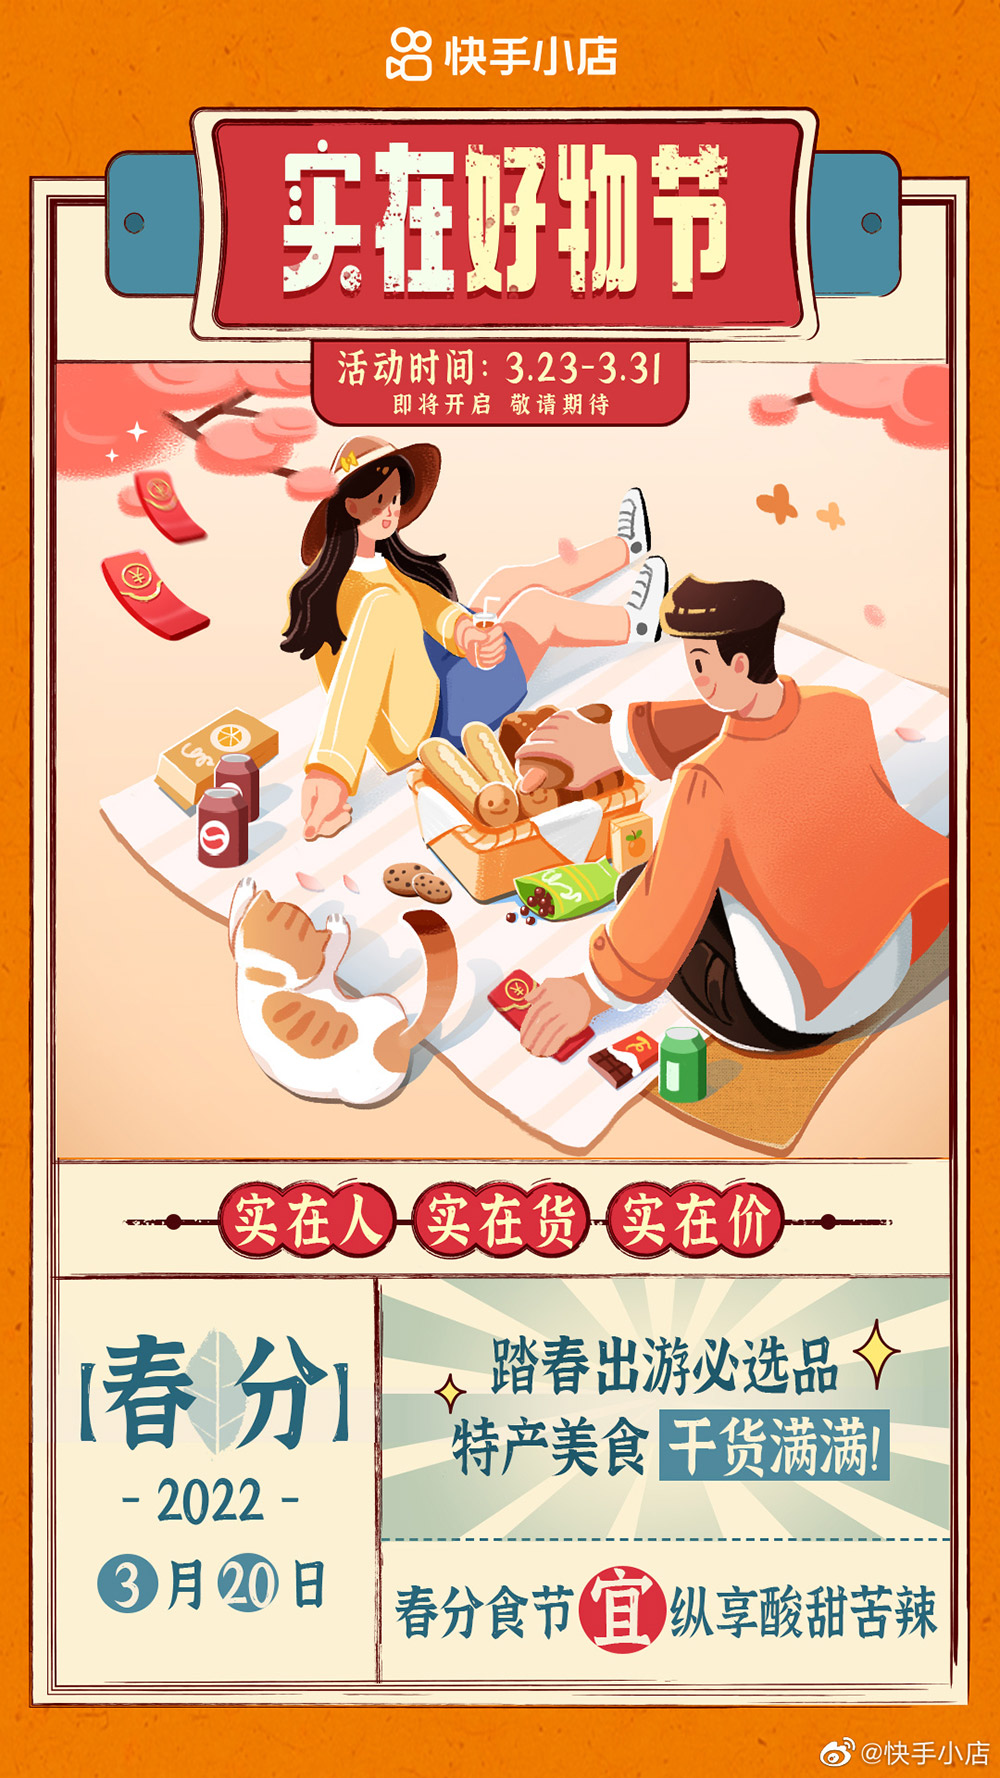 15张快手小店的插画营销海报!